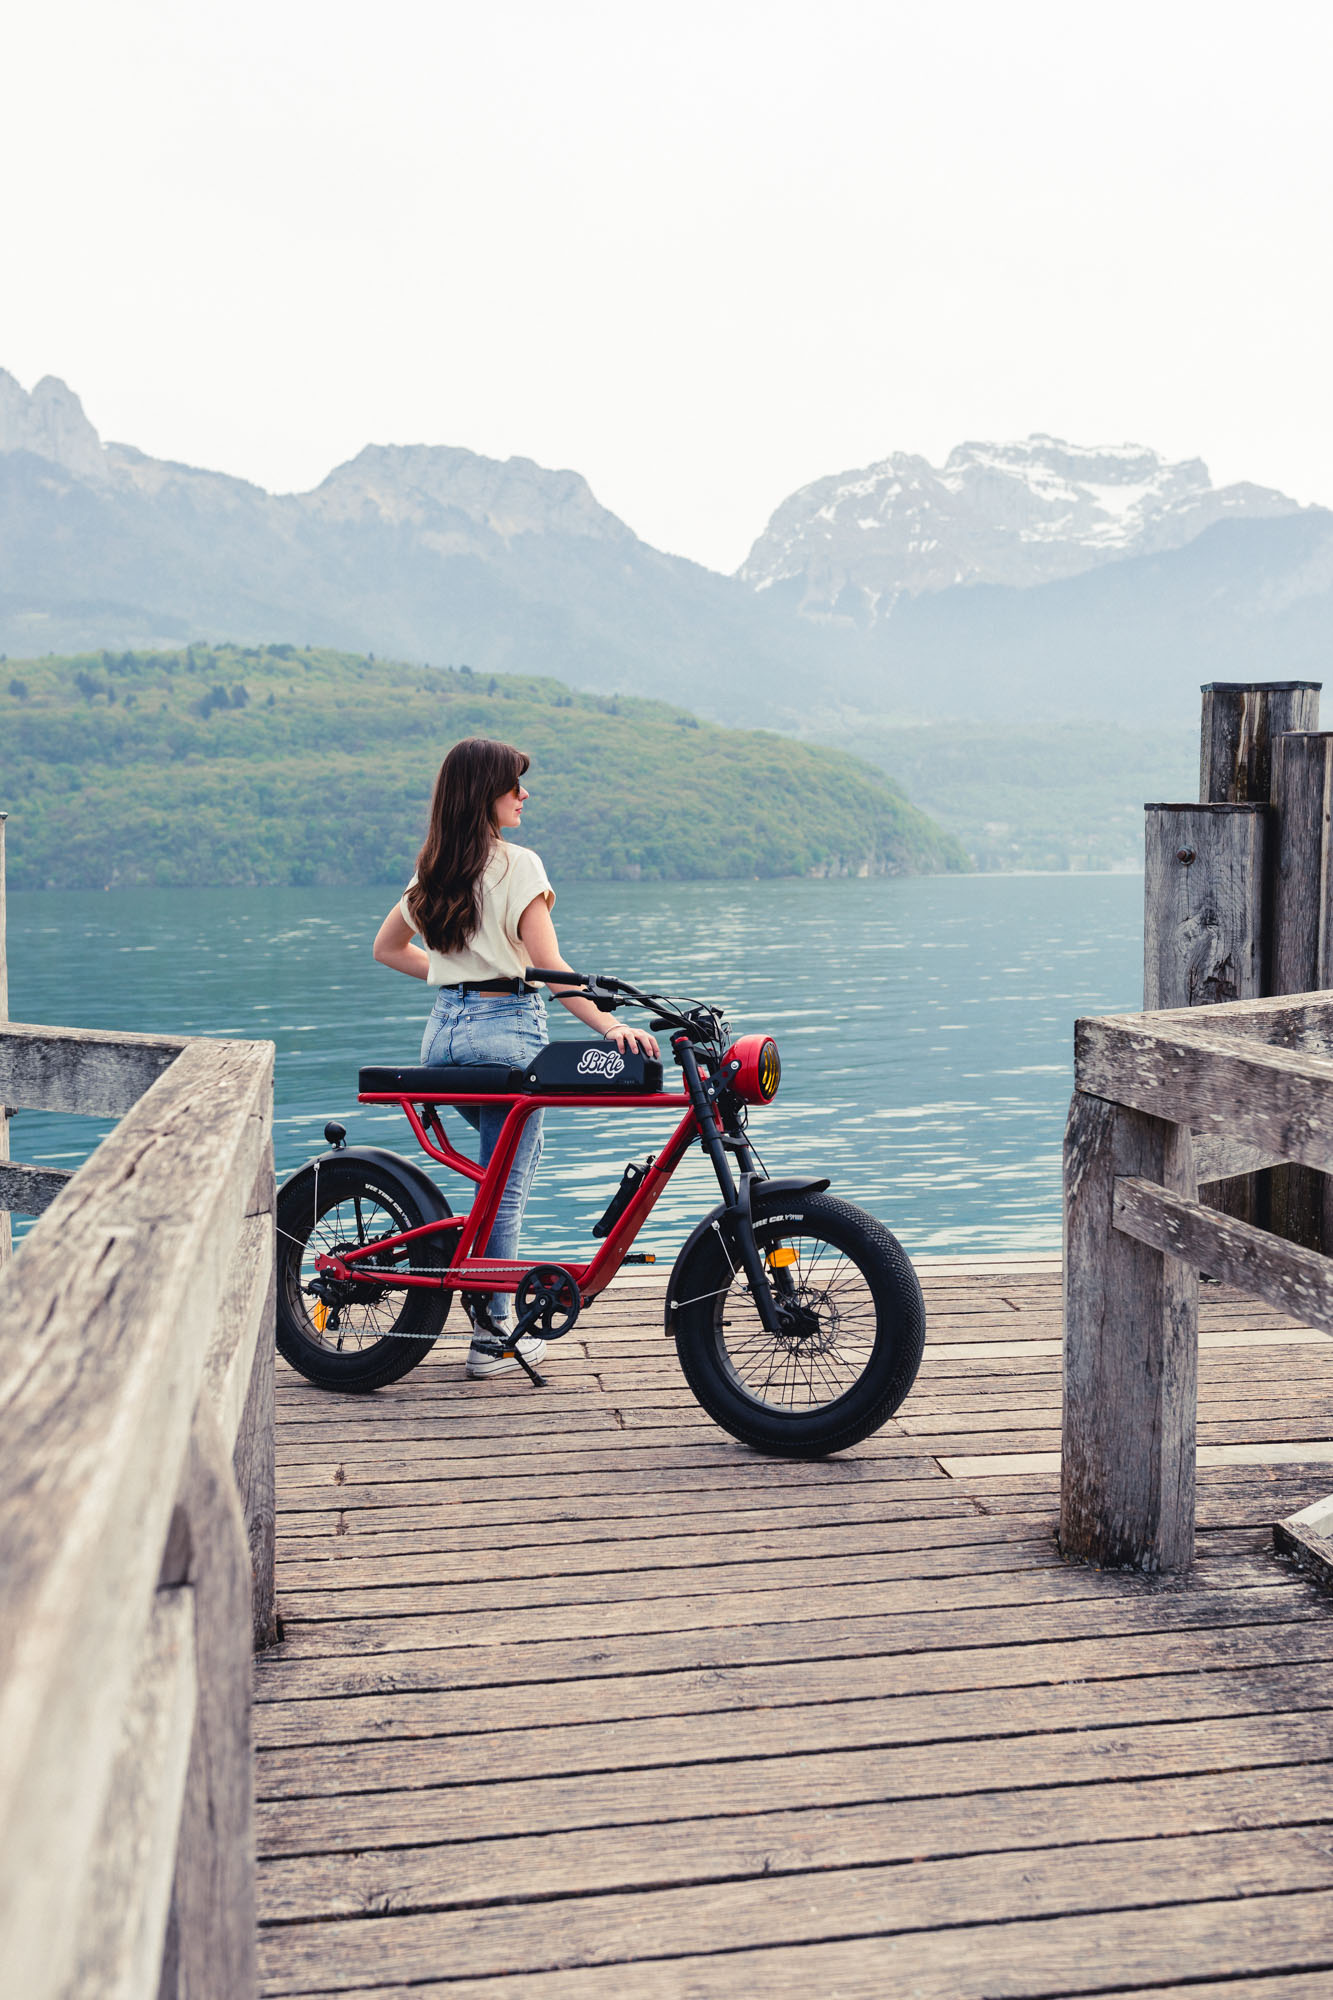 photo d'une femme brune cheveux longs tenant un vélo électrique rouge ressemblant à une vieille moto, devant des montagne et un lac, sur un ponton en bois